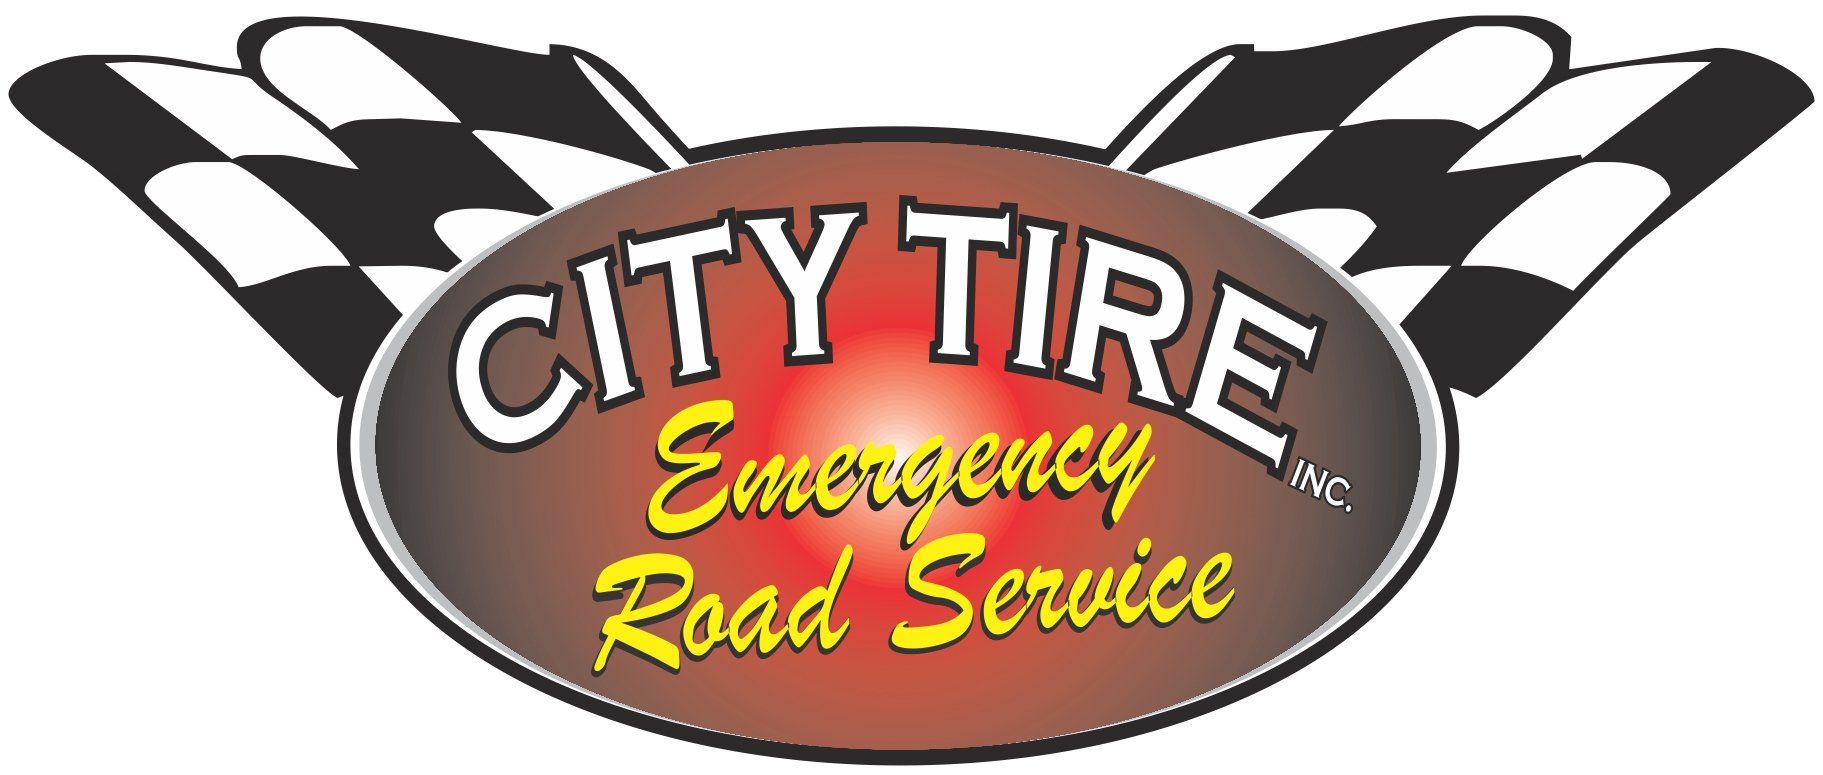 City Tire Inc.